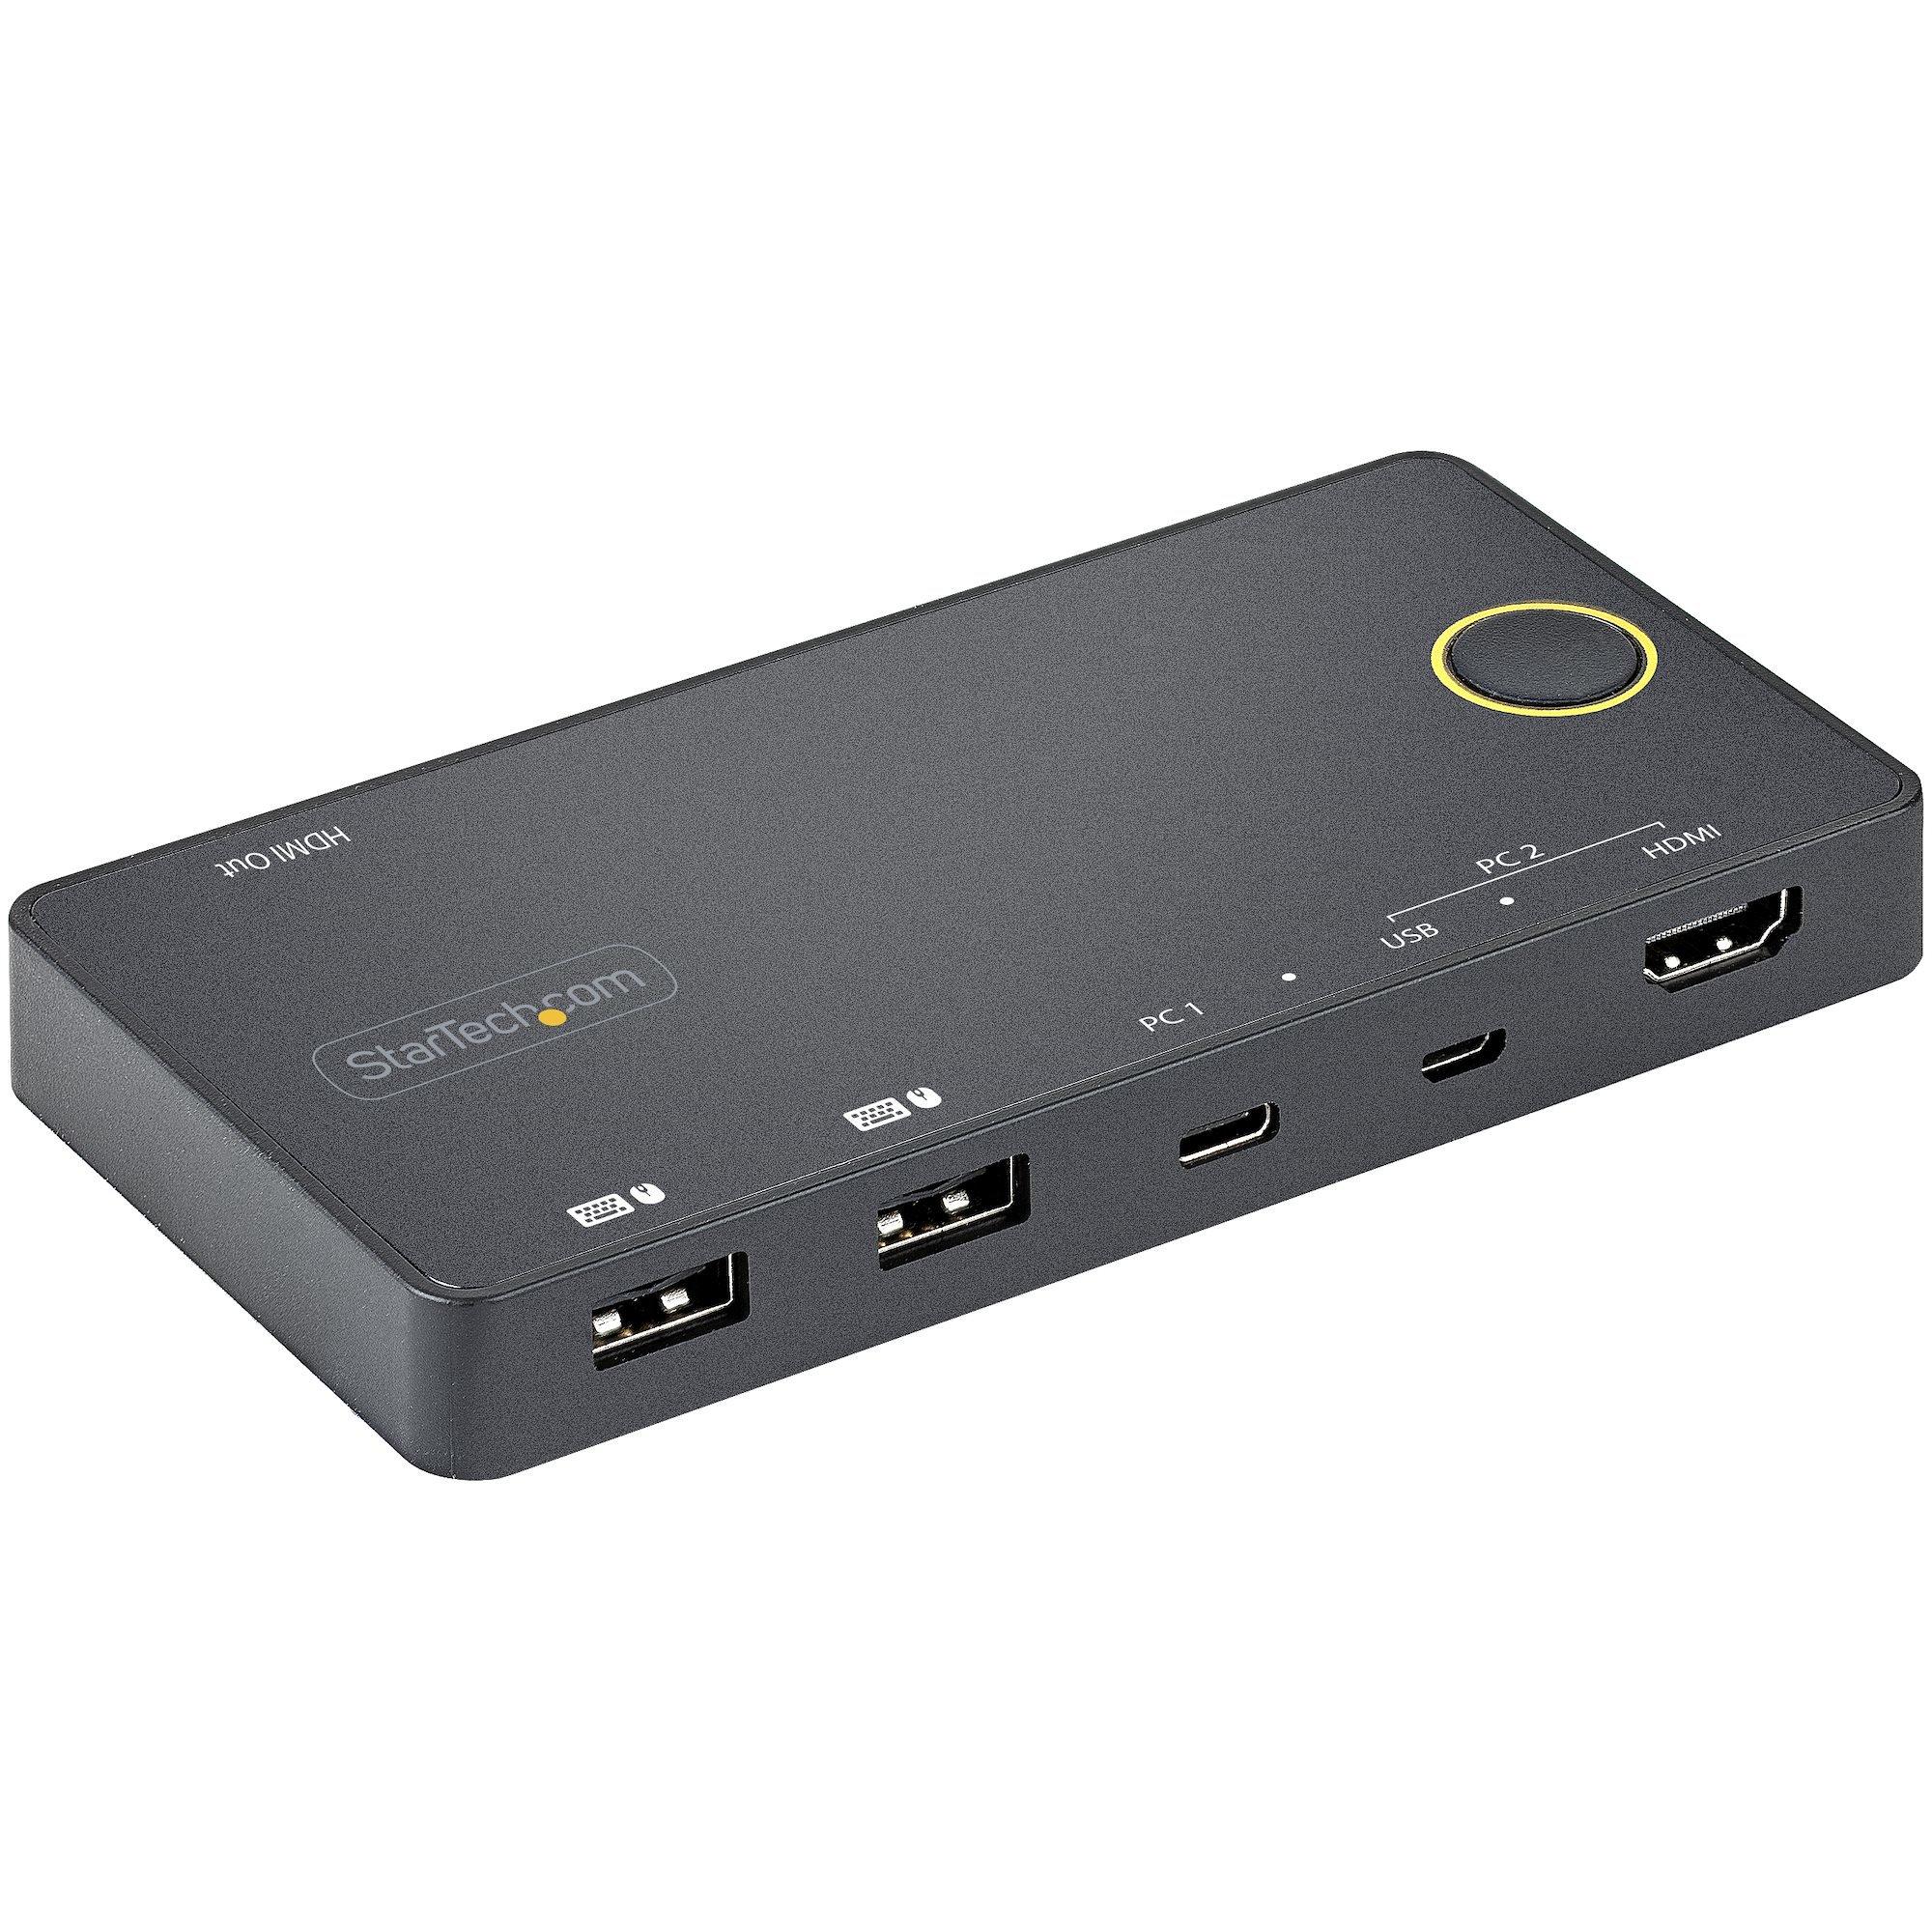 STARTECH  Switch KVM ibrido USB-A + HDMI e USB-C a 2 porte - Monitor singolo HDMI 2.0 4K 60Hz - Switch KVM compatto per desktop e/o laptop HDMI - Alimentato da bus USB - Compatibile con Thunderbolt 3 